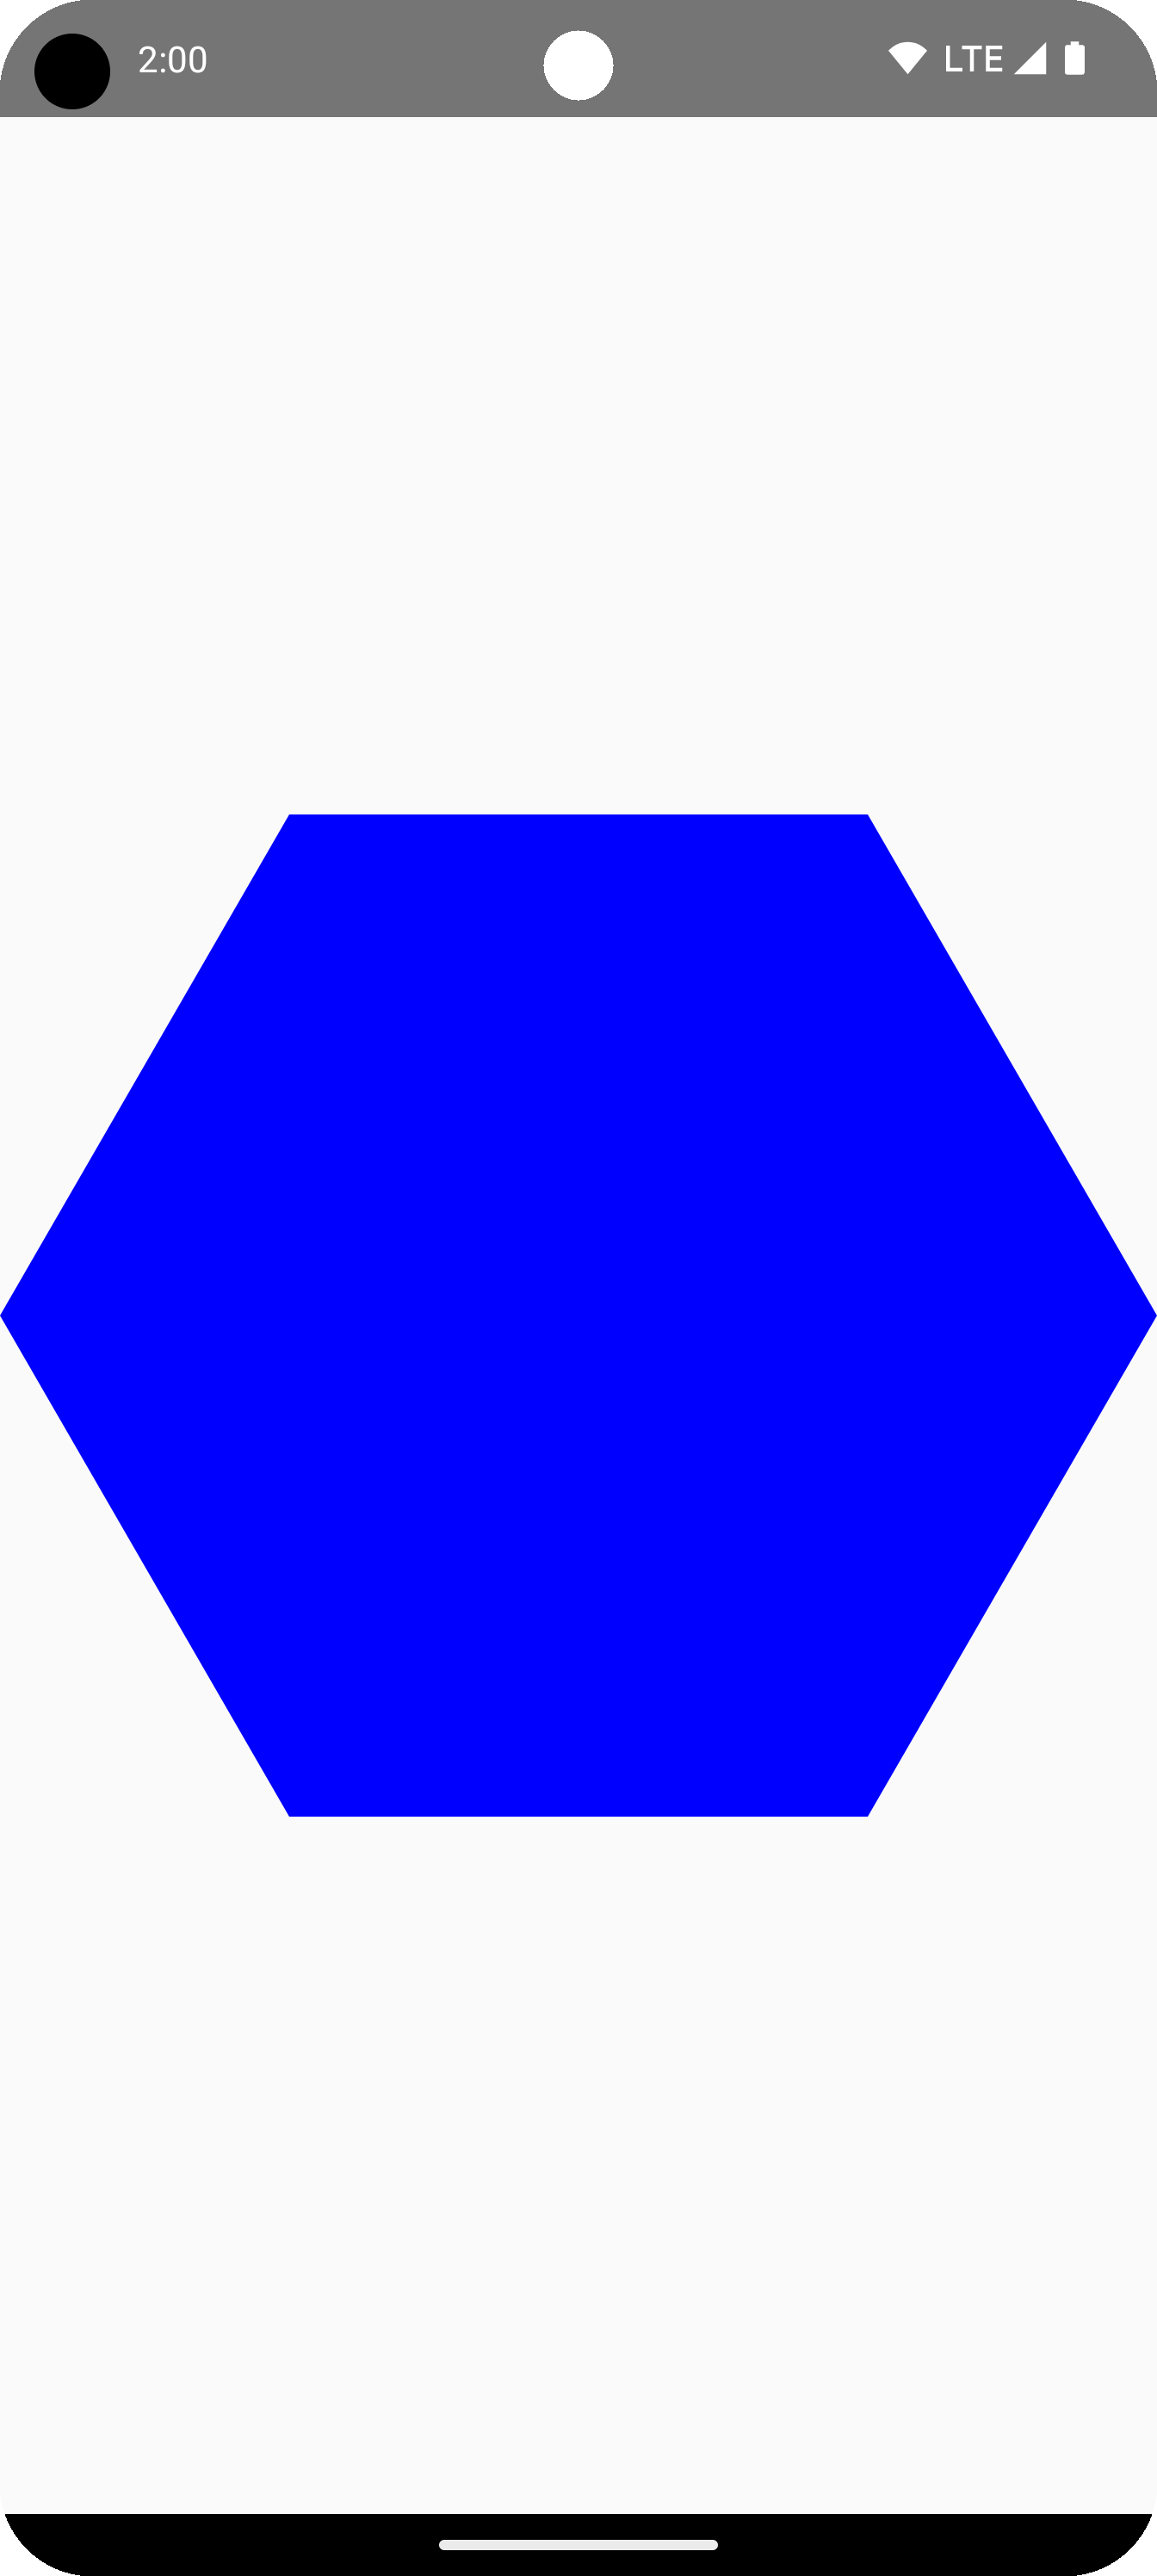 描画領域の中央にある青い六角形